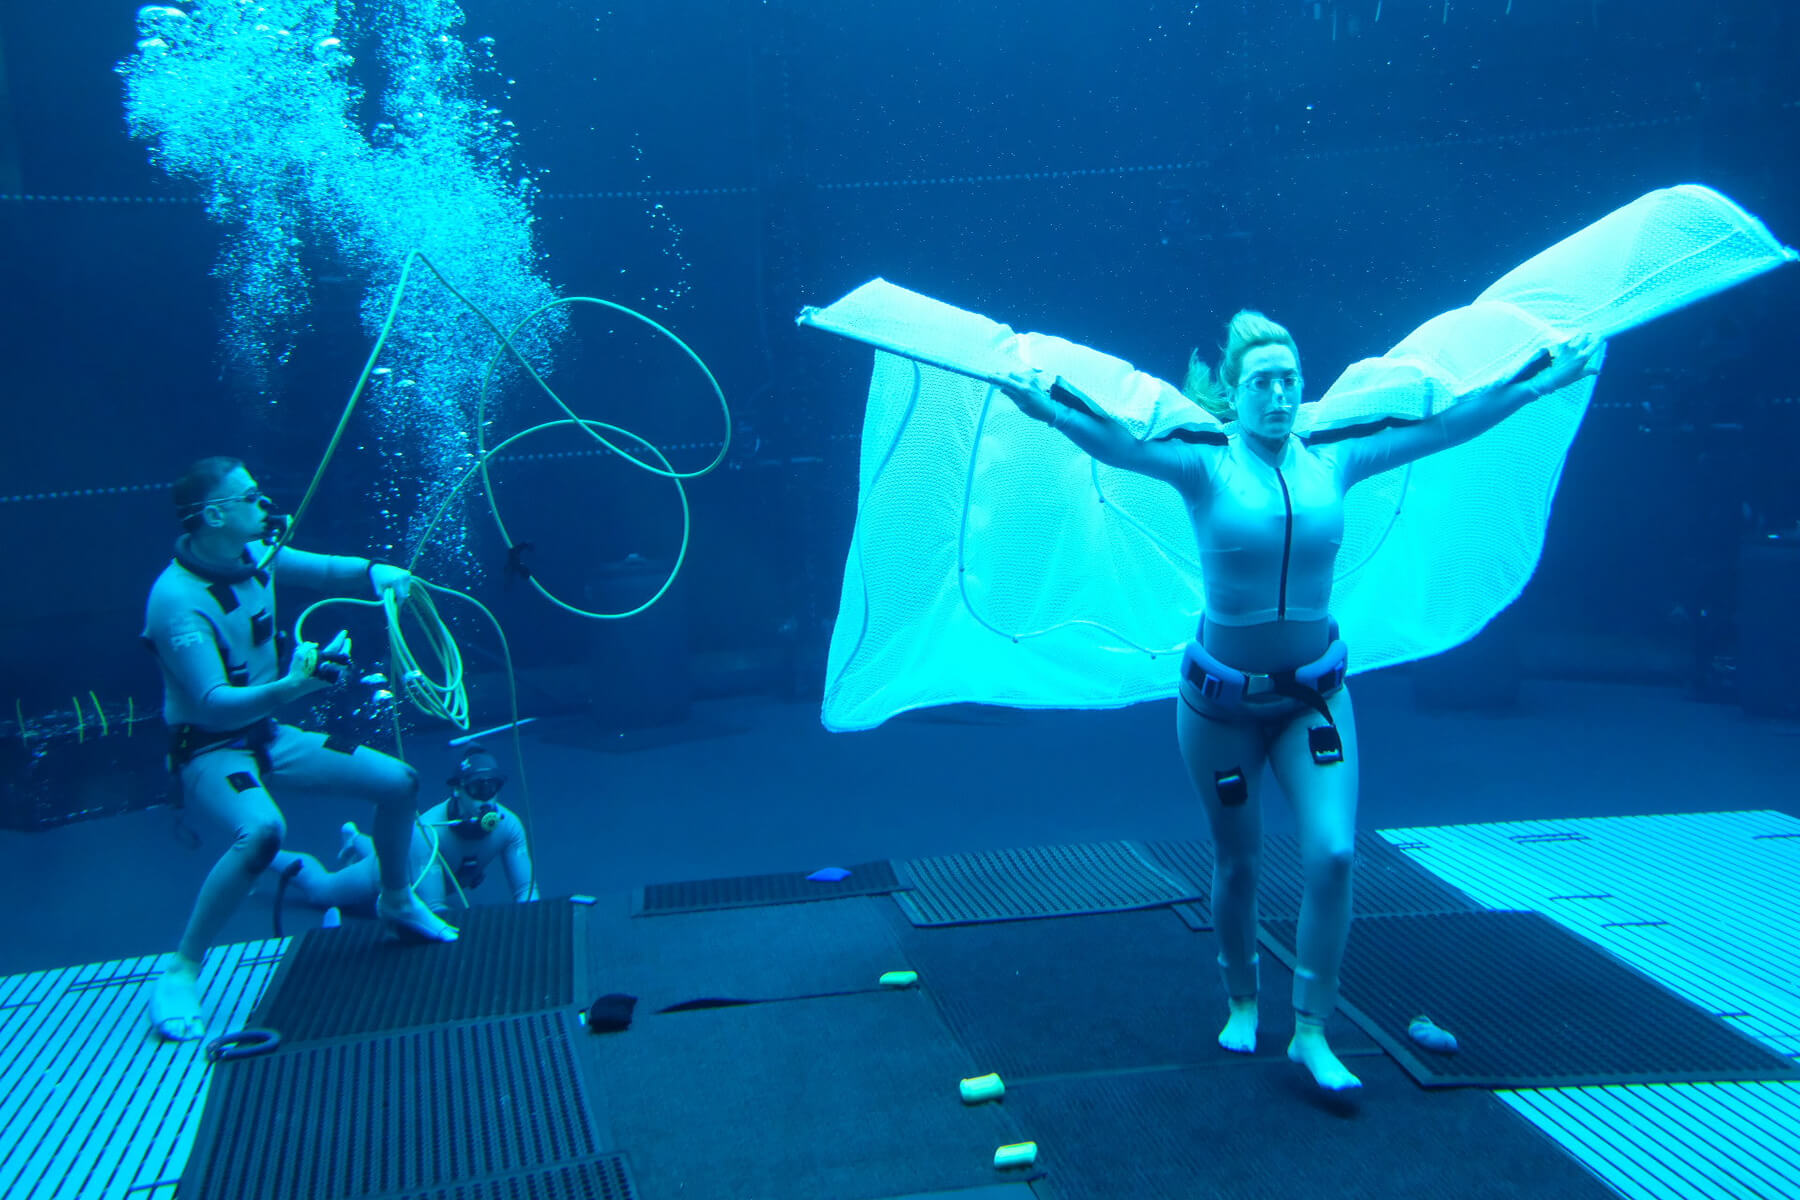 Az Avatar 2. víz alatti jelenetei úttörők lesznek, és még az első rész 3D-és látványát is felülmúlhatják